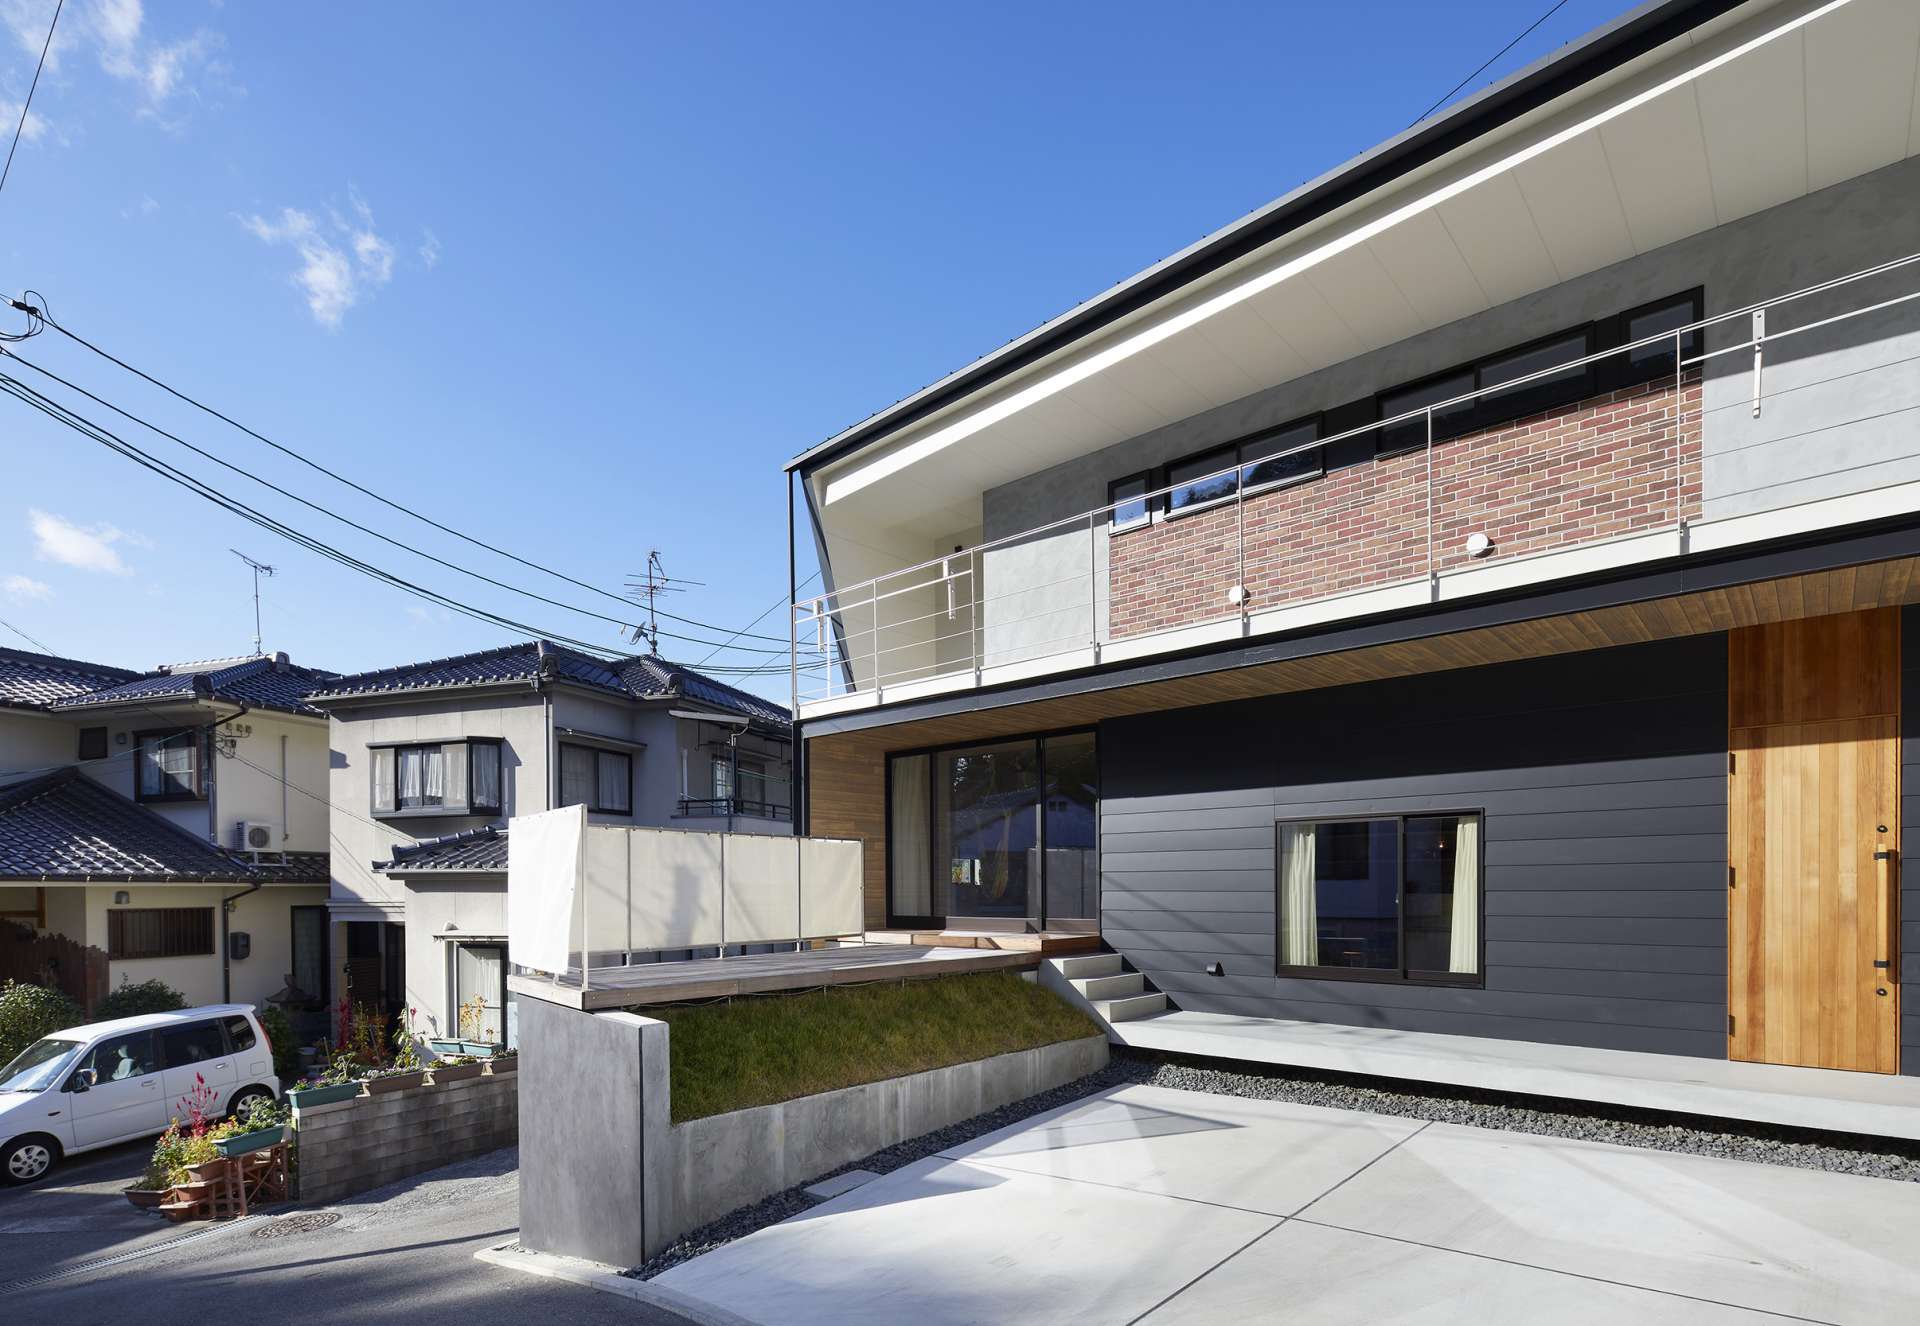 松江市でおしゃれな注文住宅の設計はお施主様の思いやこだわりを大切にする設計事務所へ